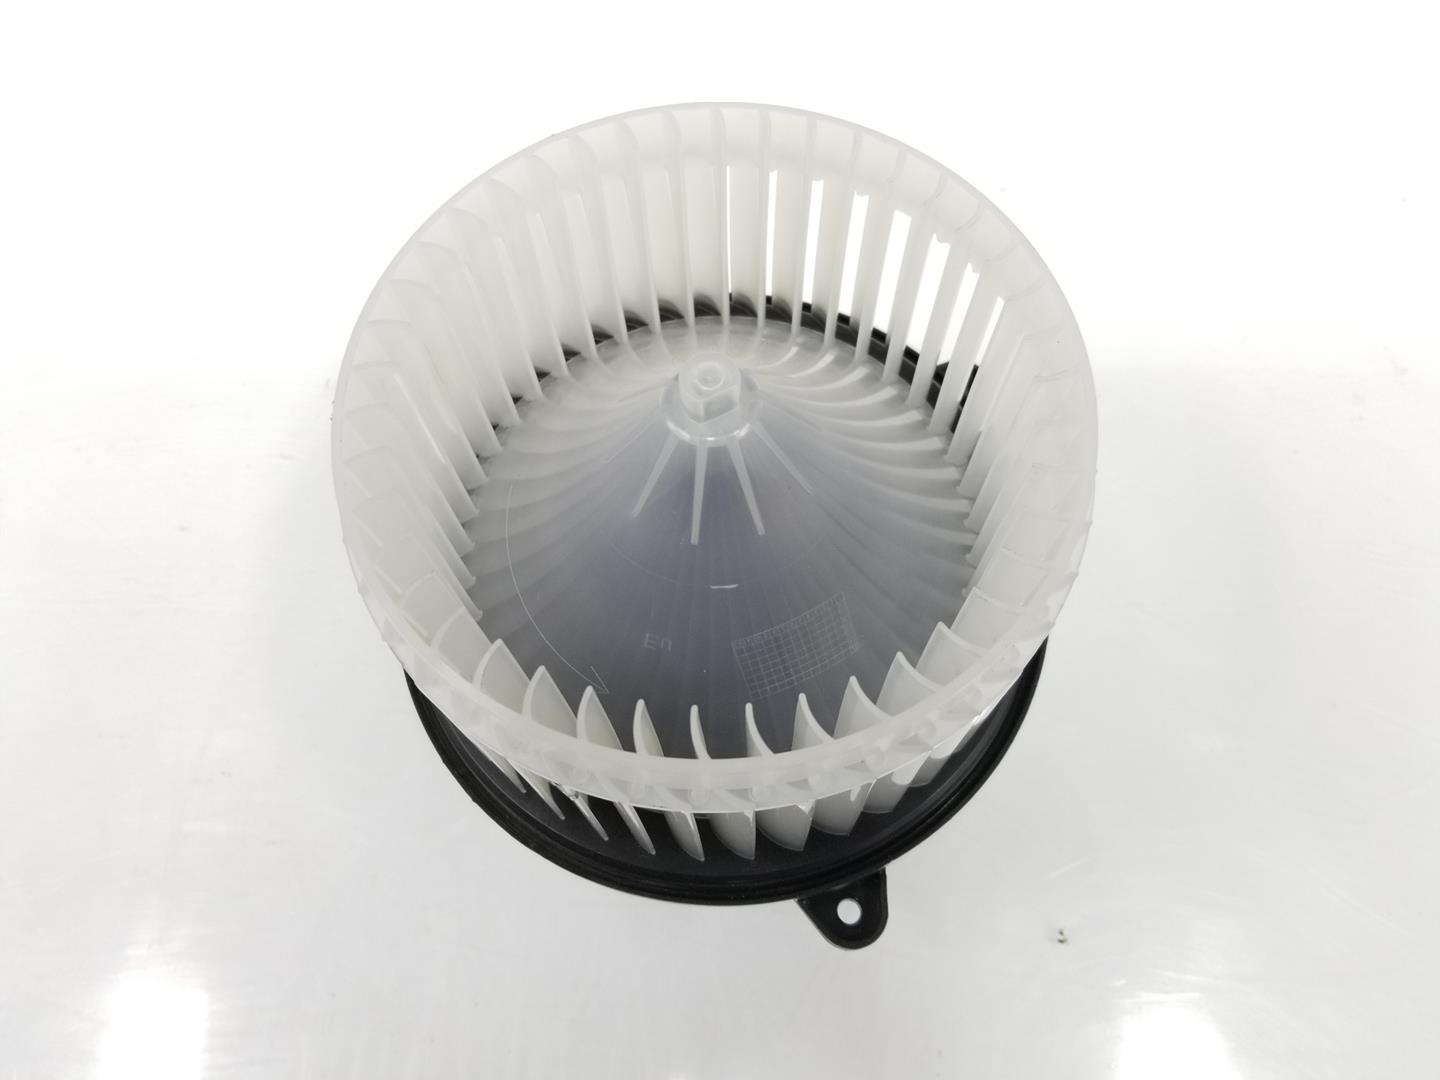 OPEL Insignia A (2008-2016) Heater Blower Fan 13263279, 13263279 19761908